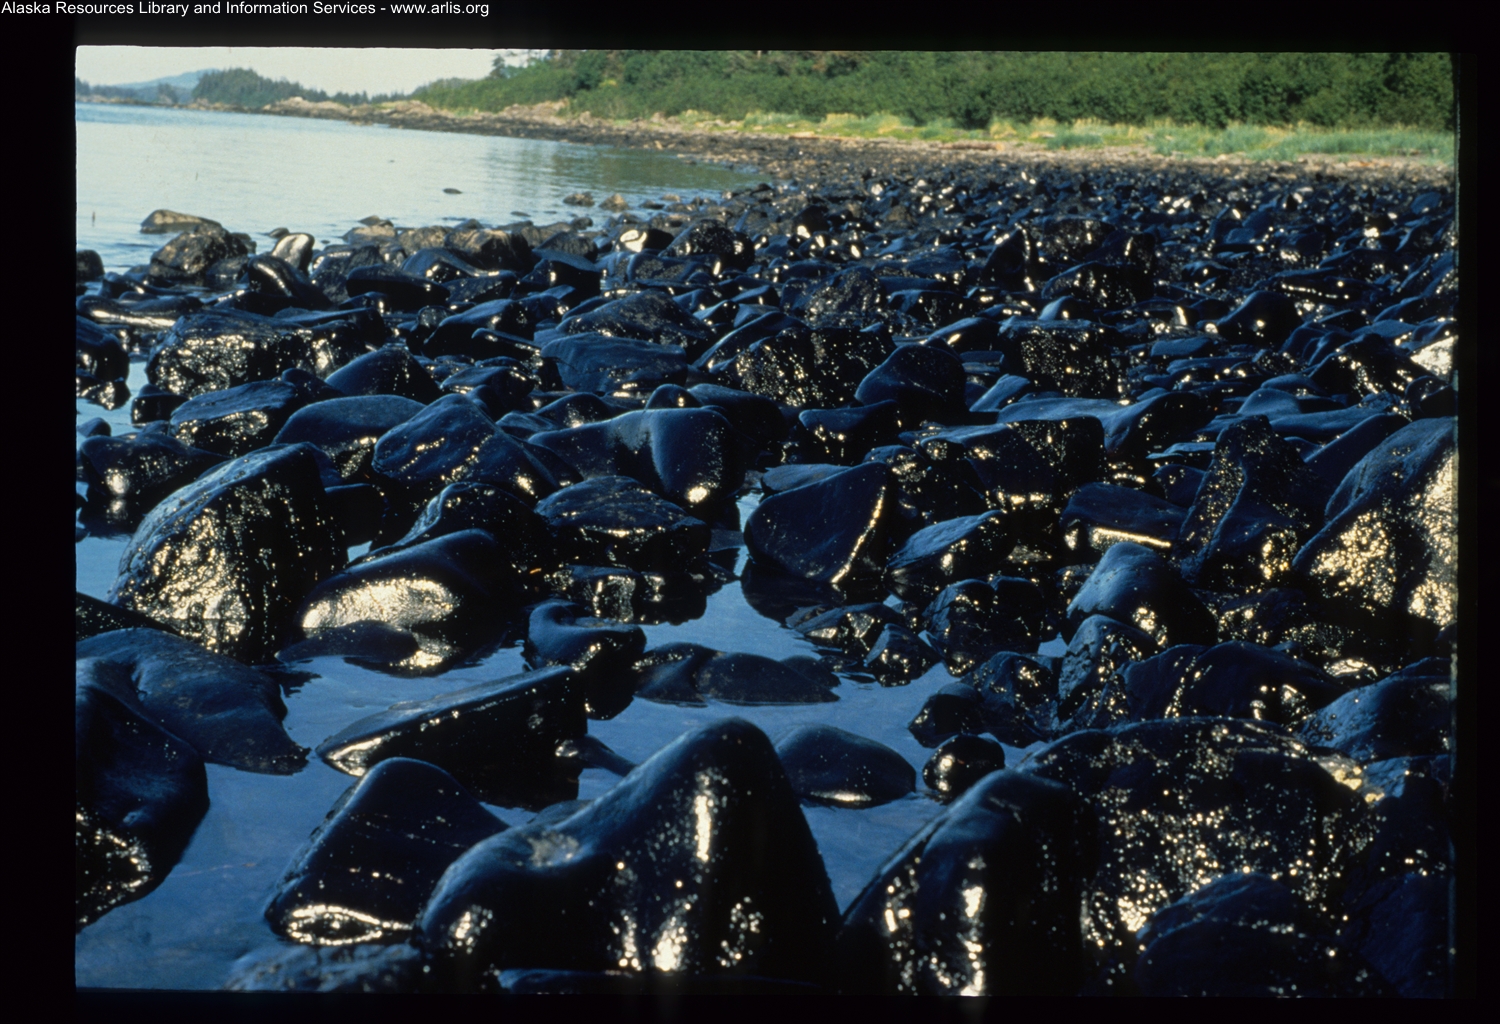 Аварии с загрязнением окружающей среды. Экссон Вальдес 1989. Разлив нефти Exxon Valdez. Крушение танкера Exxon Valdez. Авария танкера Эксон Валдез.